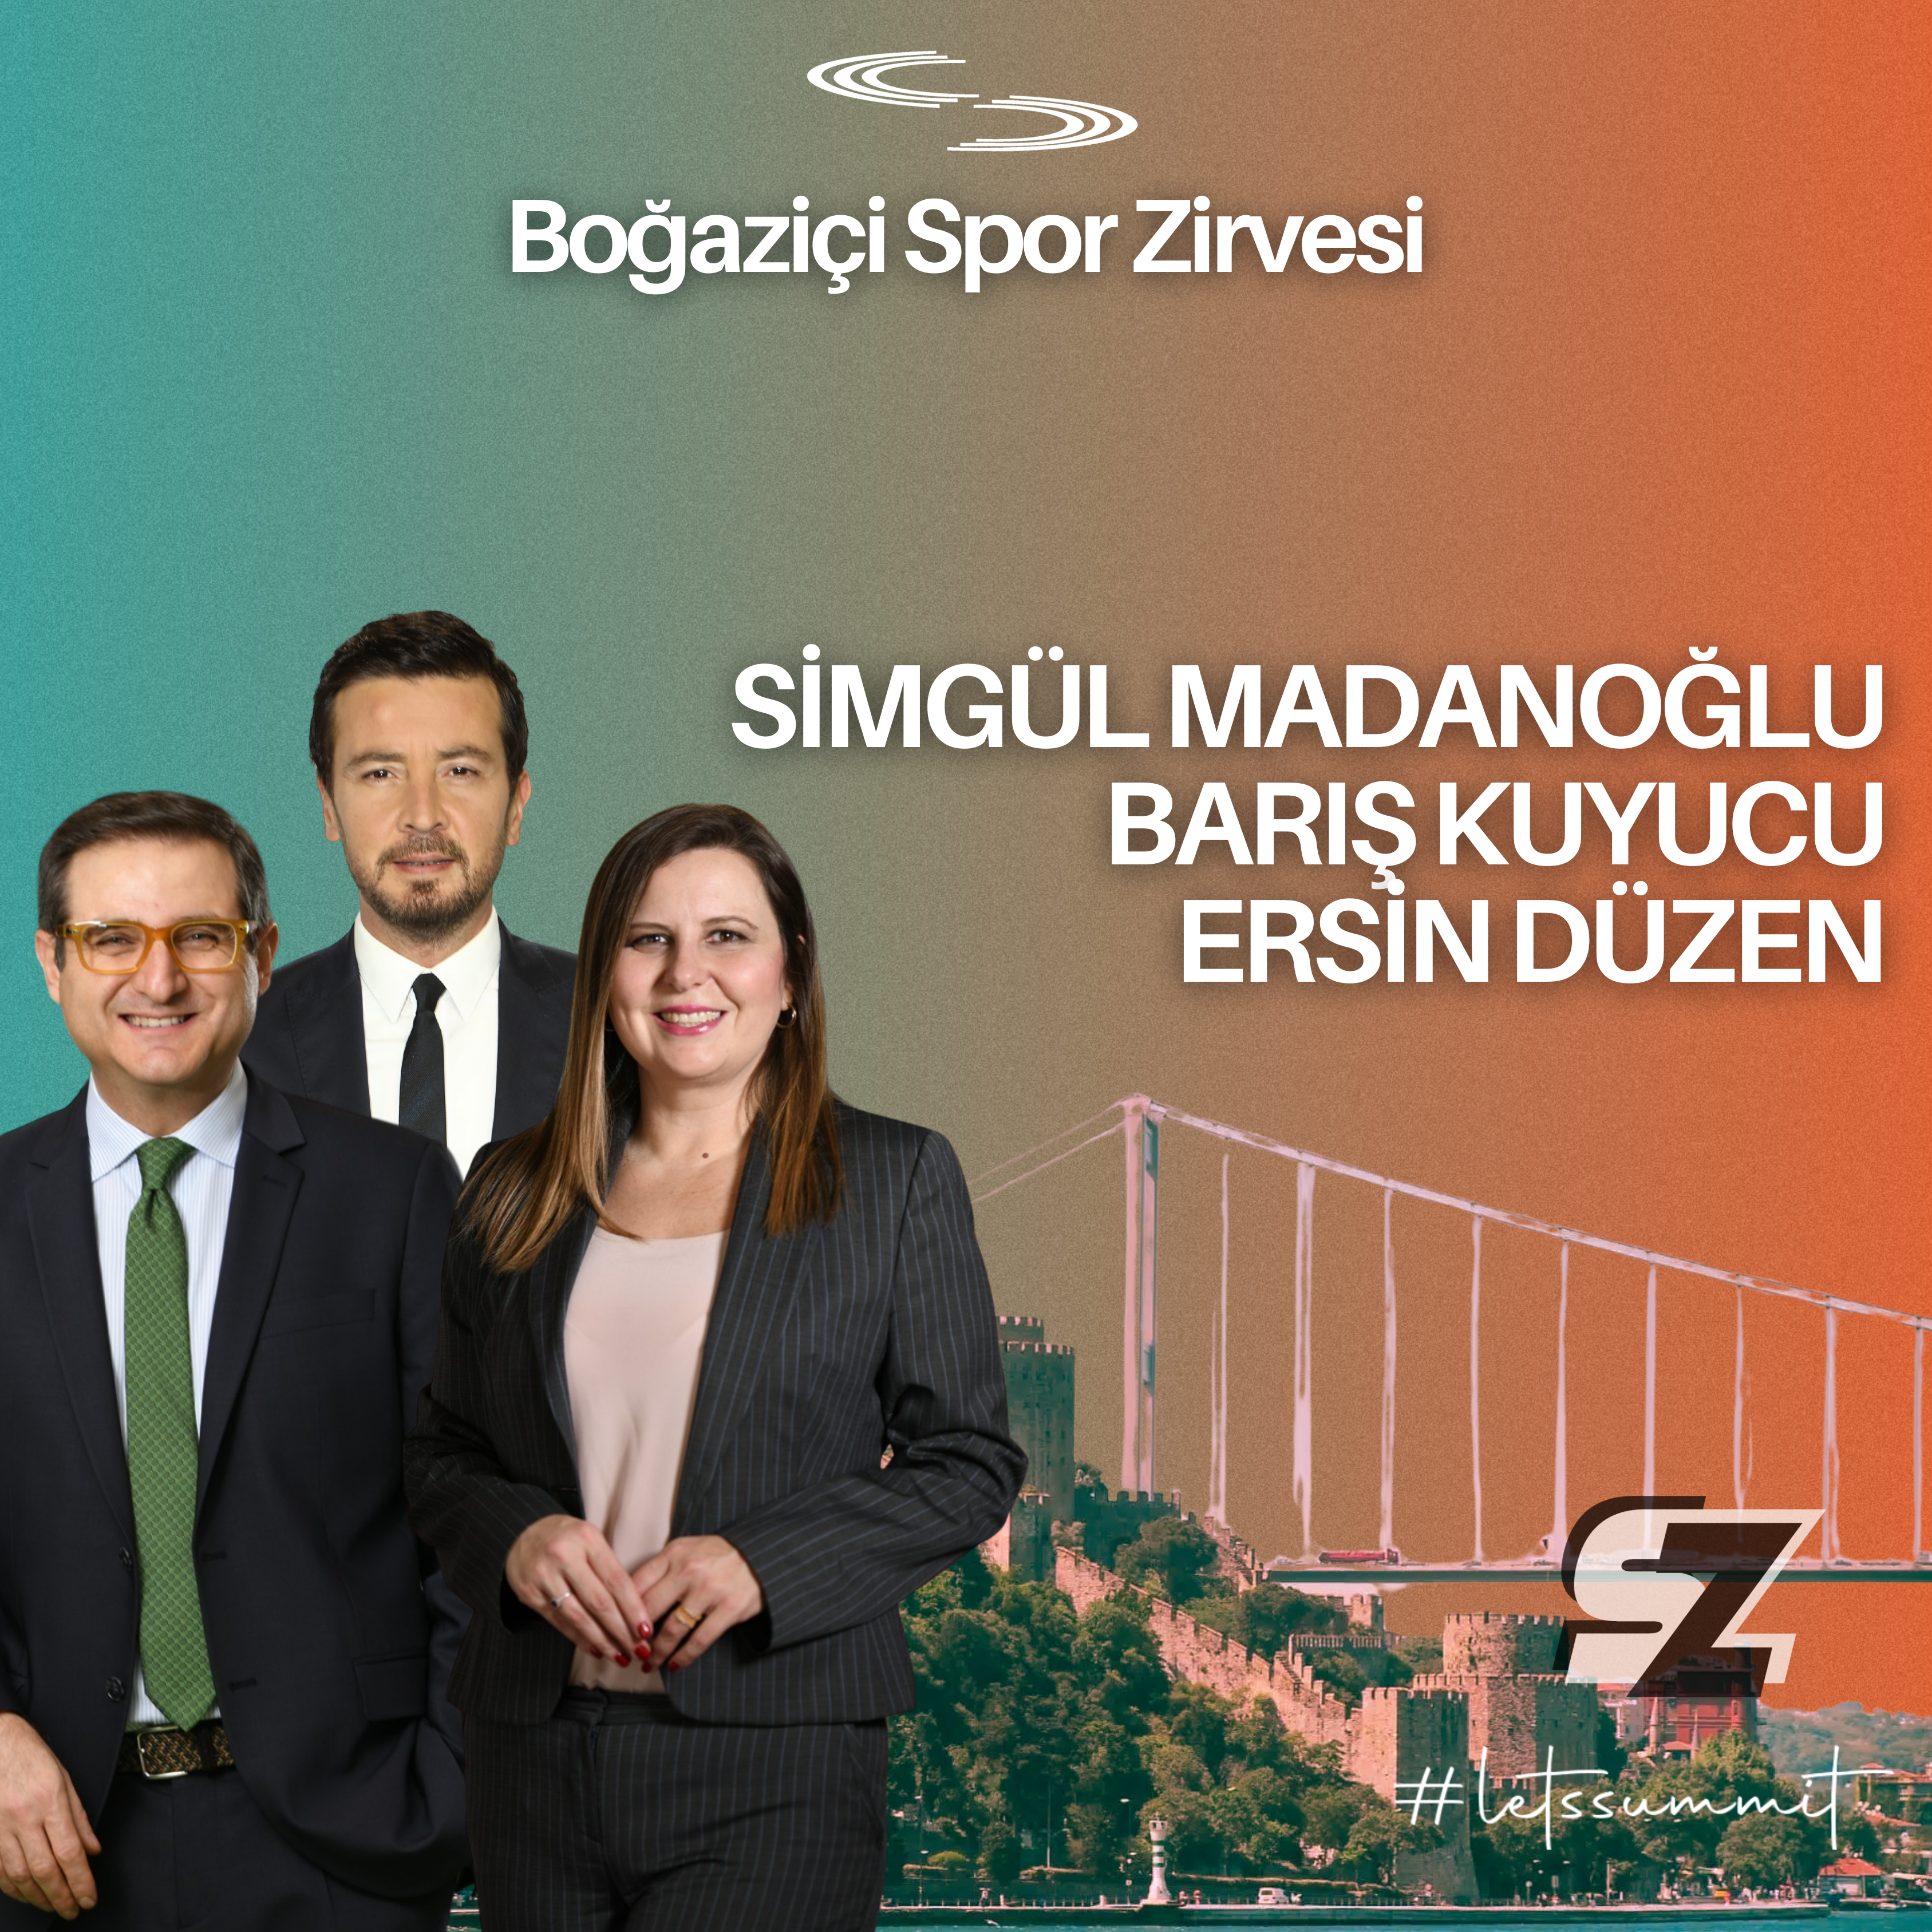 6. Boğaziçi Üniversitesi Bilyoner Spor Zirvesi,  20 – 21 Nisan’da düzenlenecek